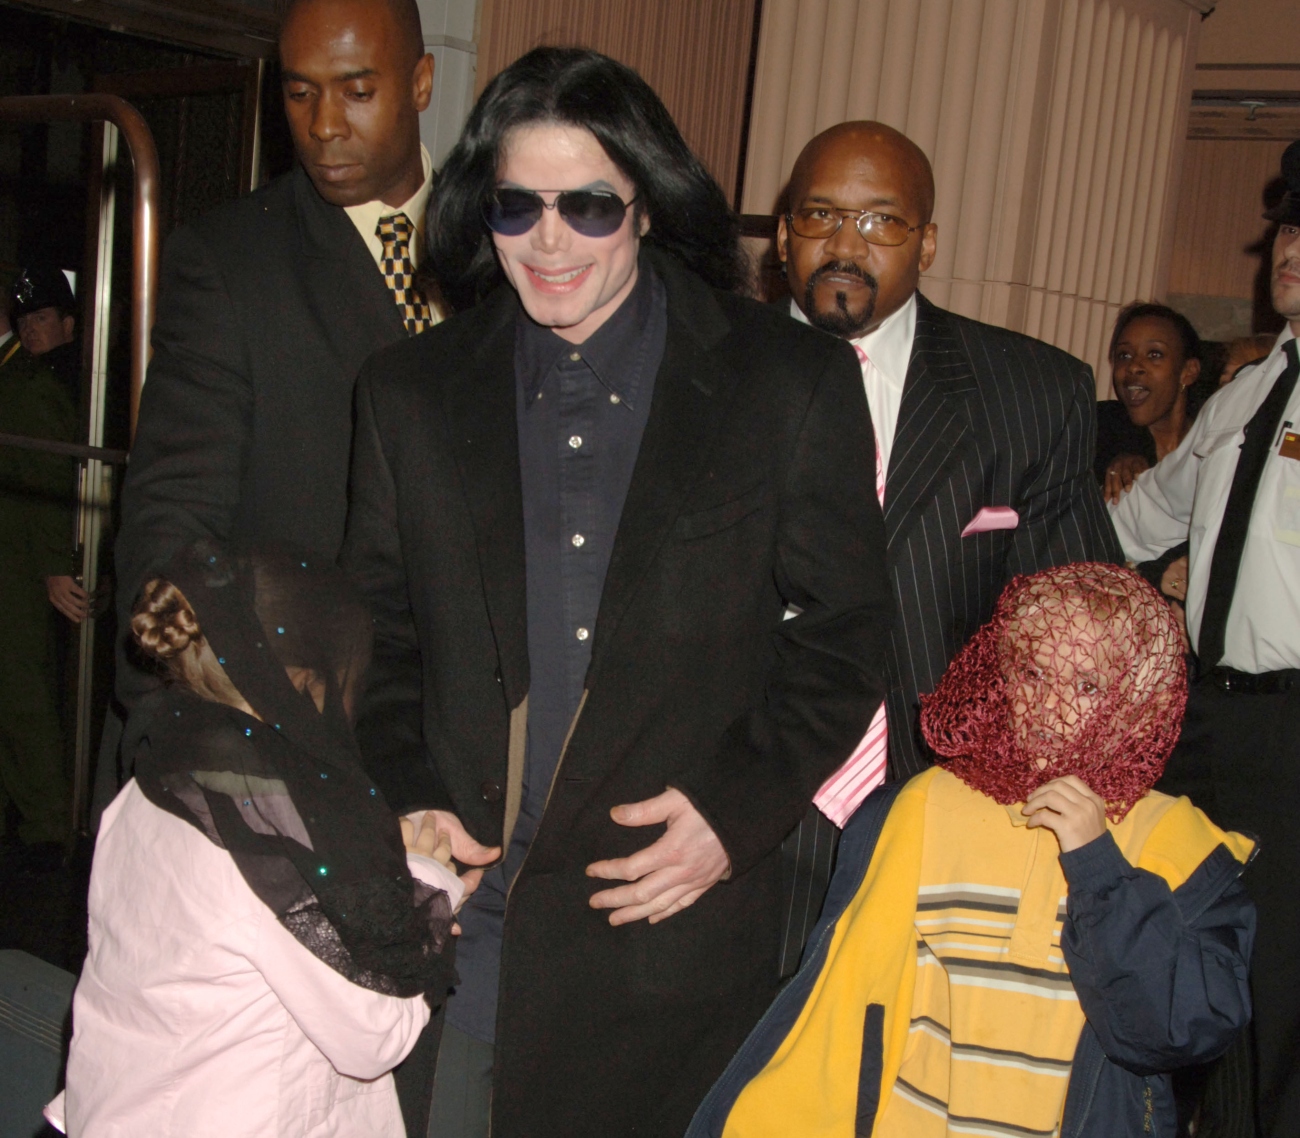 Michael Jackson with Paris and Prince Jackson